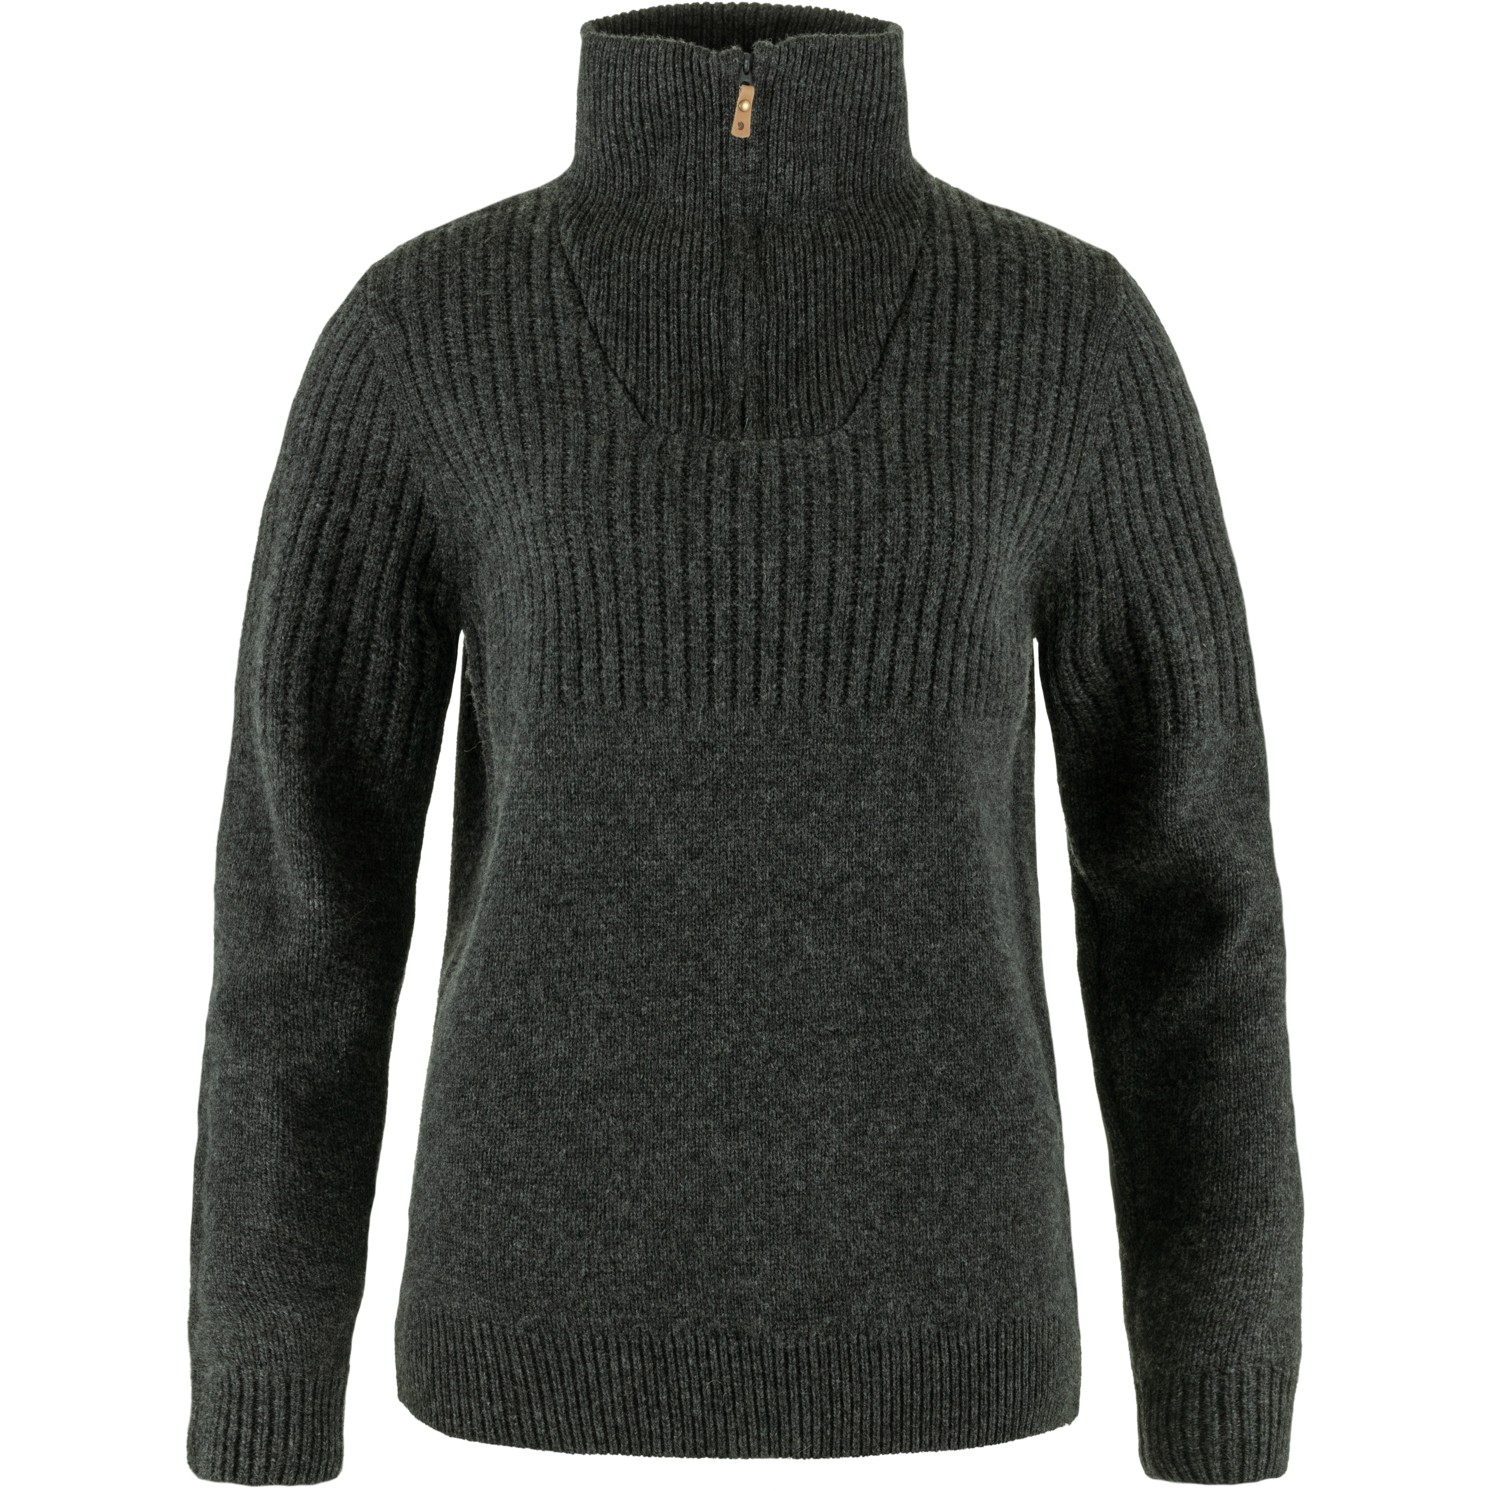 Produktbild von Fjällräven Övik Half Zip Knit Pullover Damen - dark grey